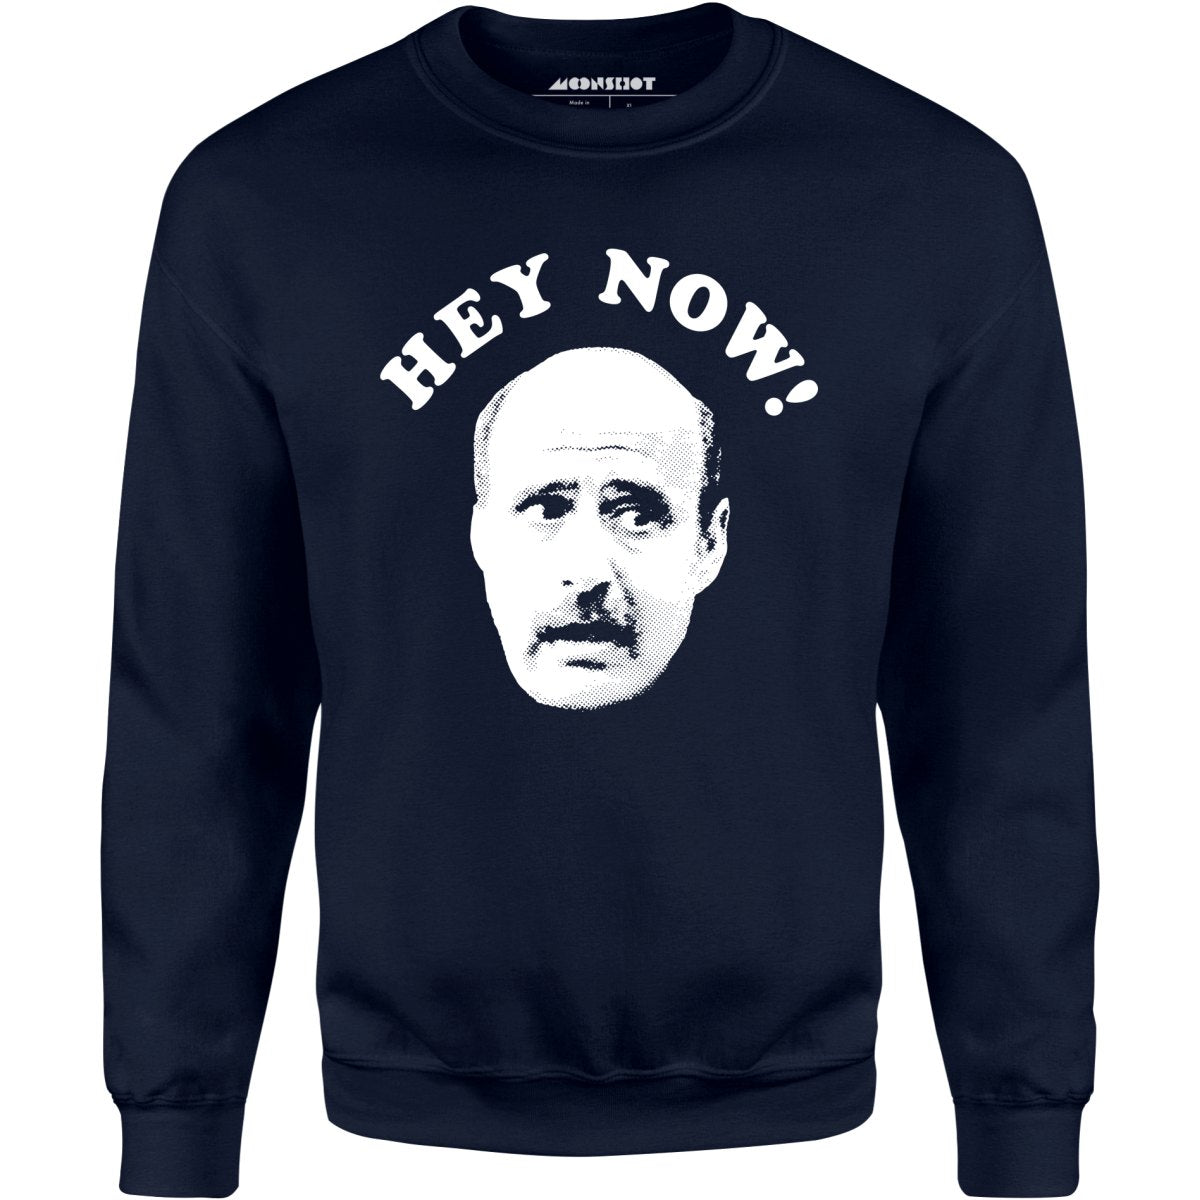 Hey Now - Hank Kingsley - Unisex Sweatshirt